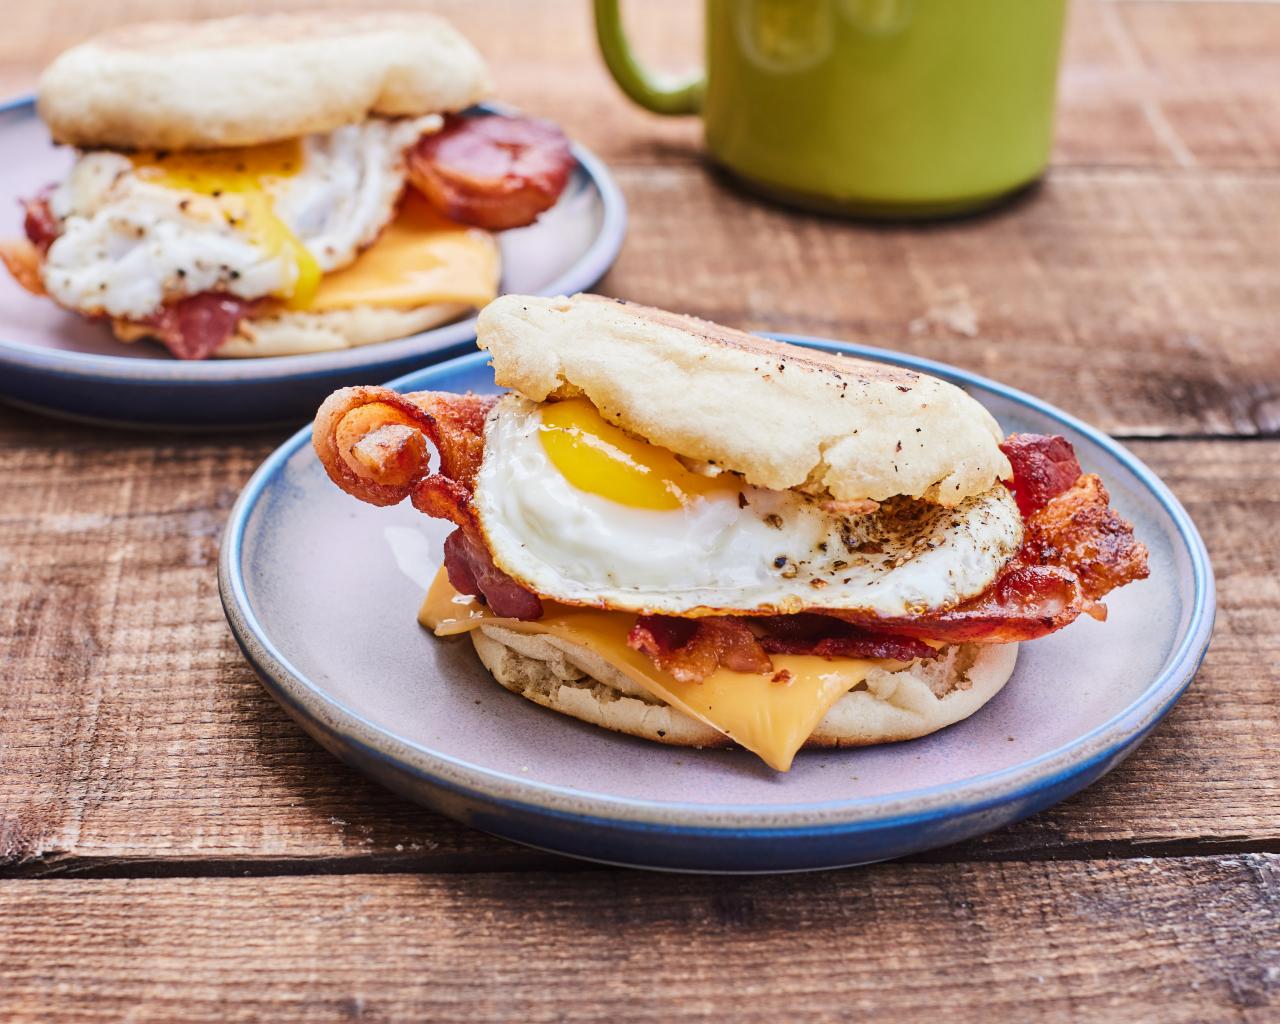 13 Best Breakfast Grilling Ideas  Breakfast Recipes on the Grill